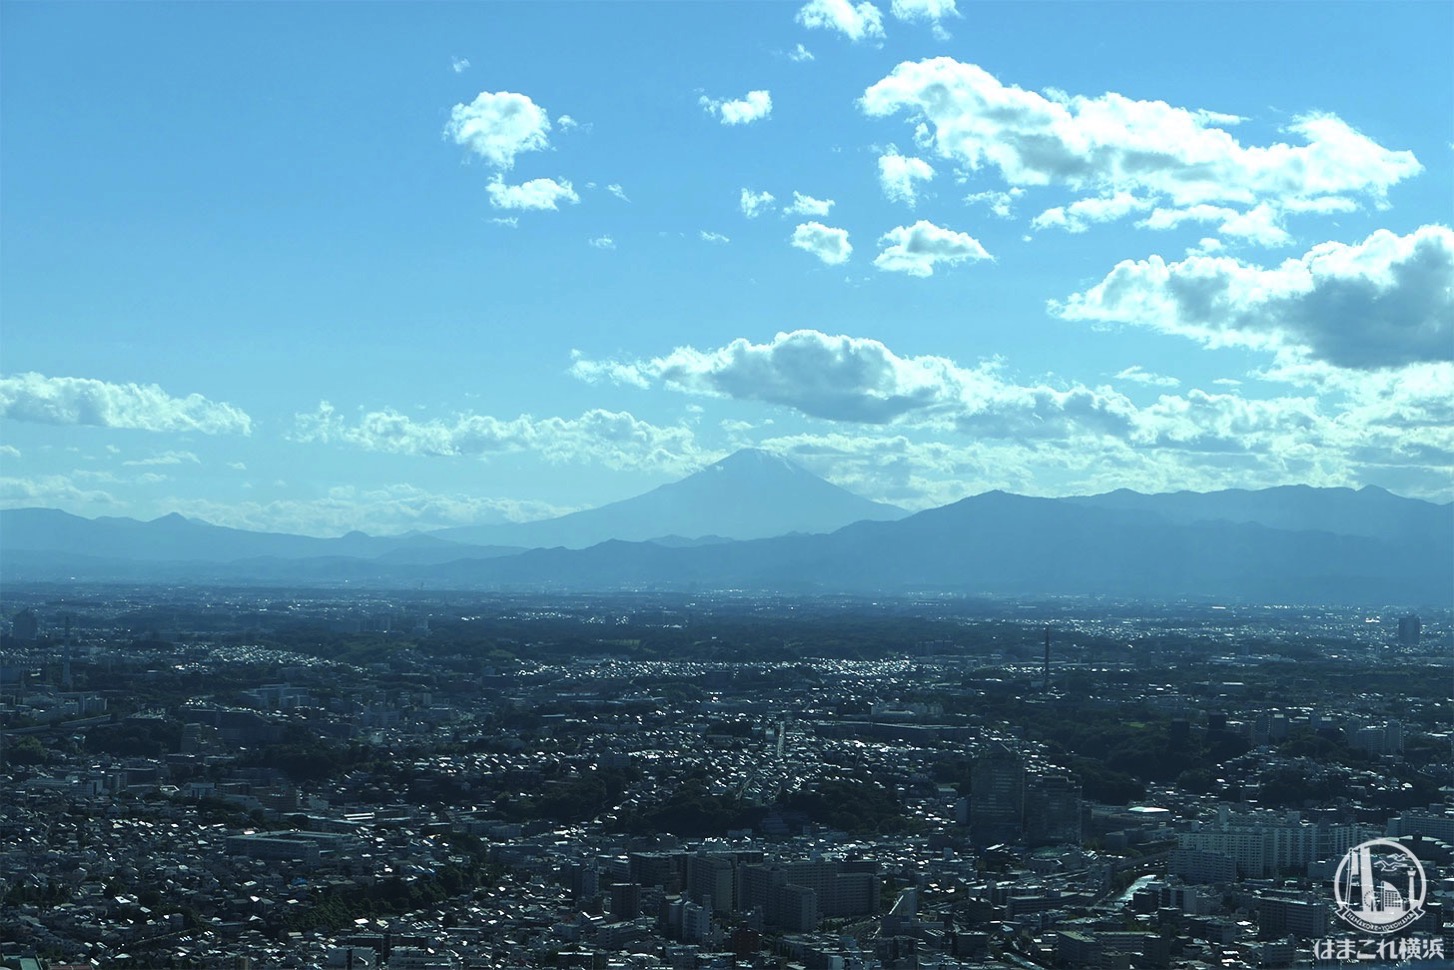 展望フロア「スカイガーデン」から見た富士山